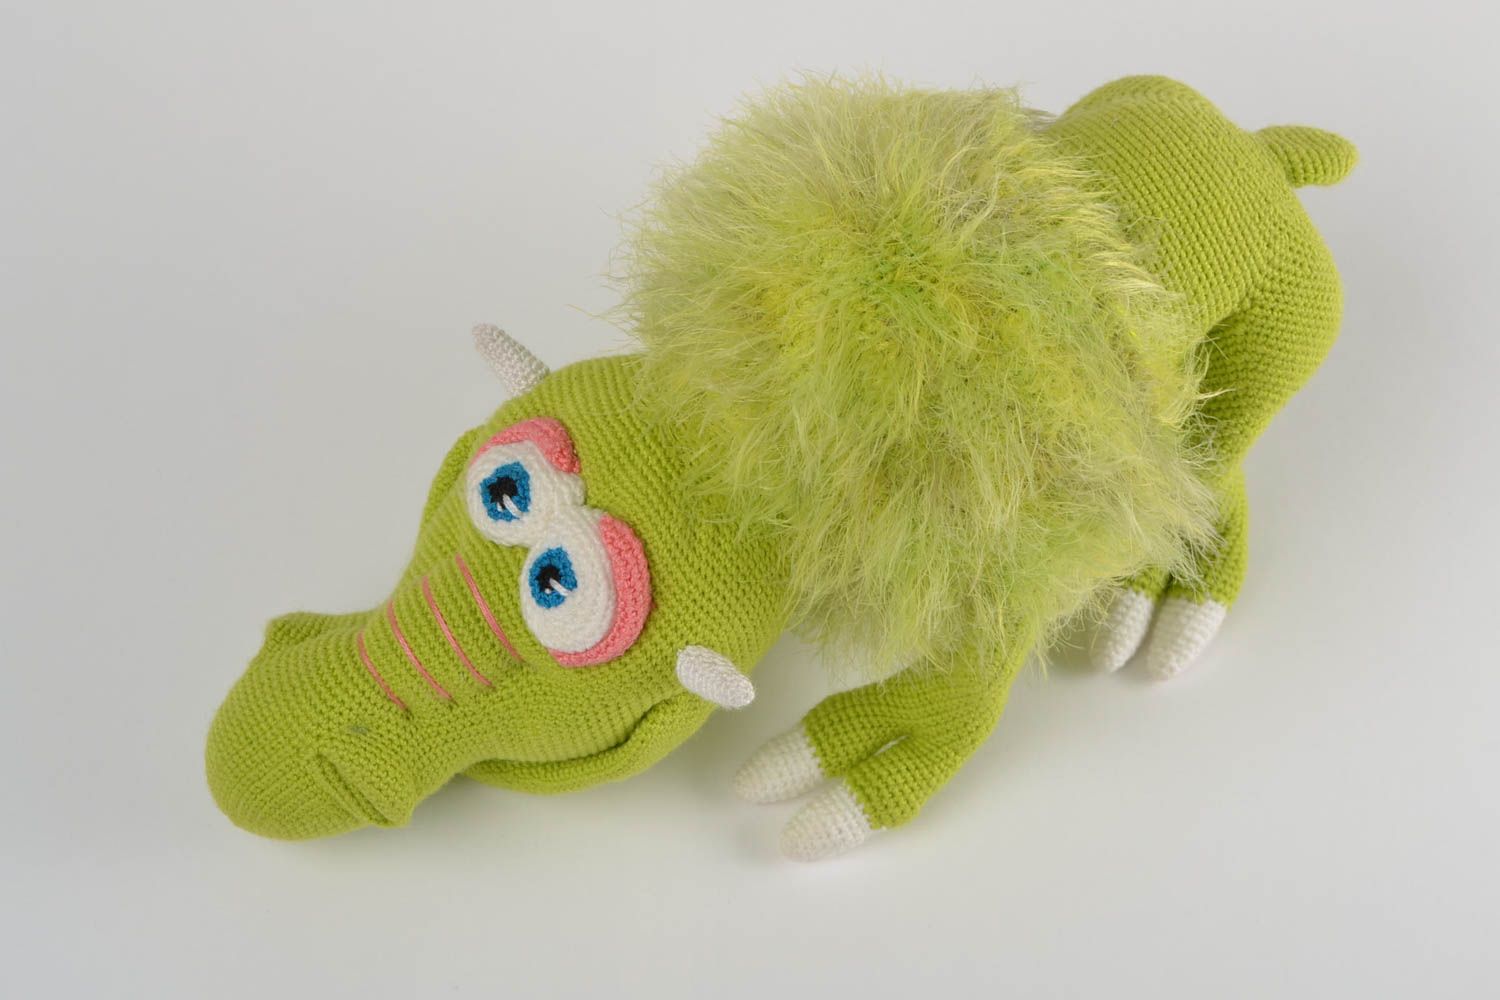 Мягкая вязаная игрушка ручной работы для детей смешная зеленая авторская Грагомот фото 3